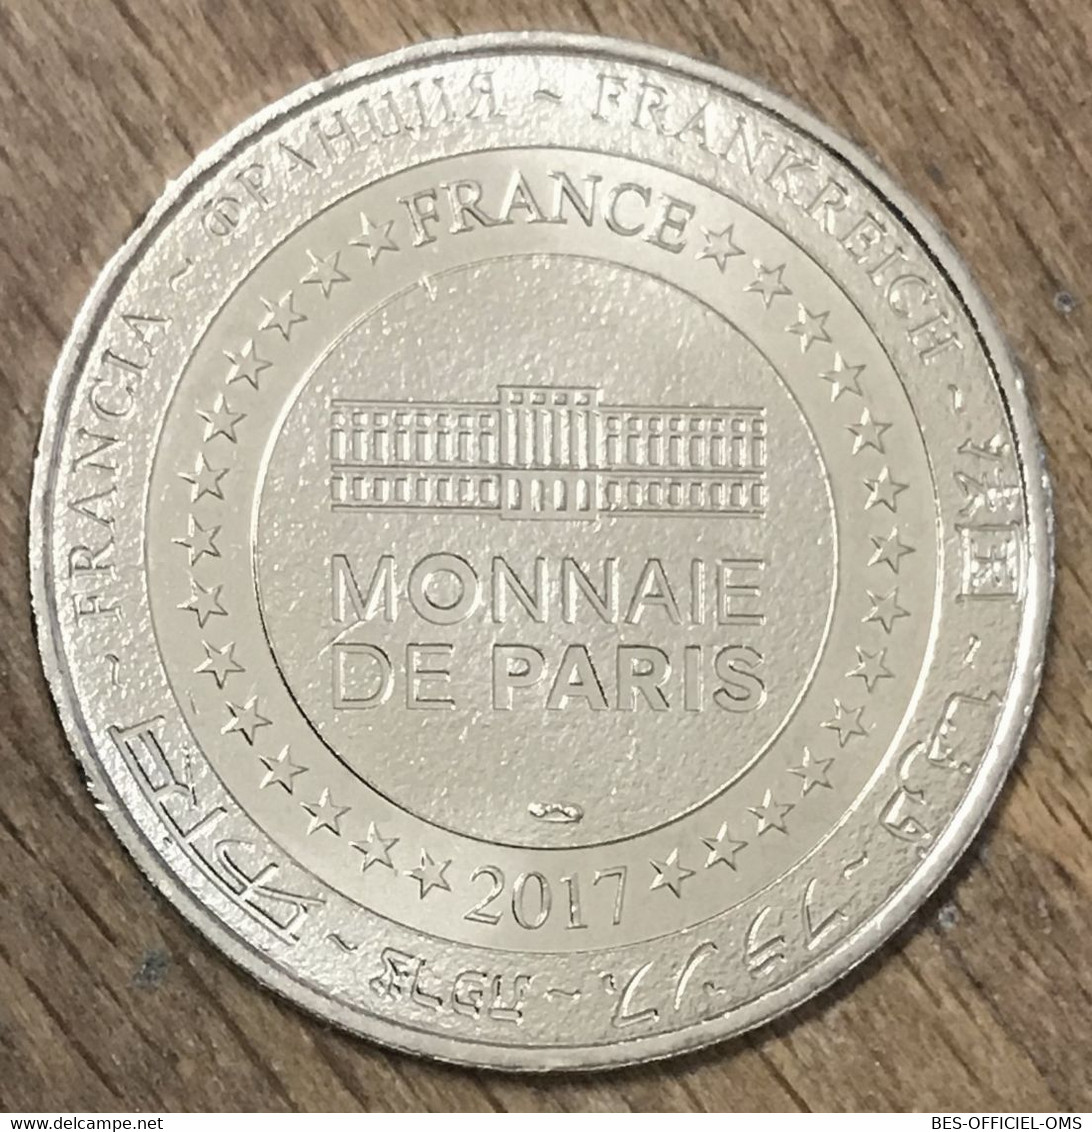 75006 MONNAIE DE PARIS 2017 CN INT MÉDAILLE SOUVENIR MONNAIE DE PARIS JETON TOURISTIQUE MEDALS COINS TOKENS - 2018